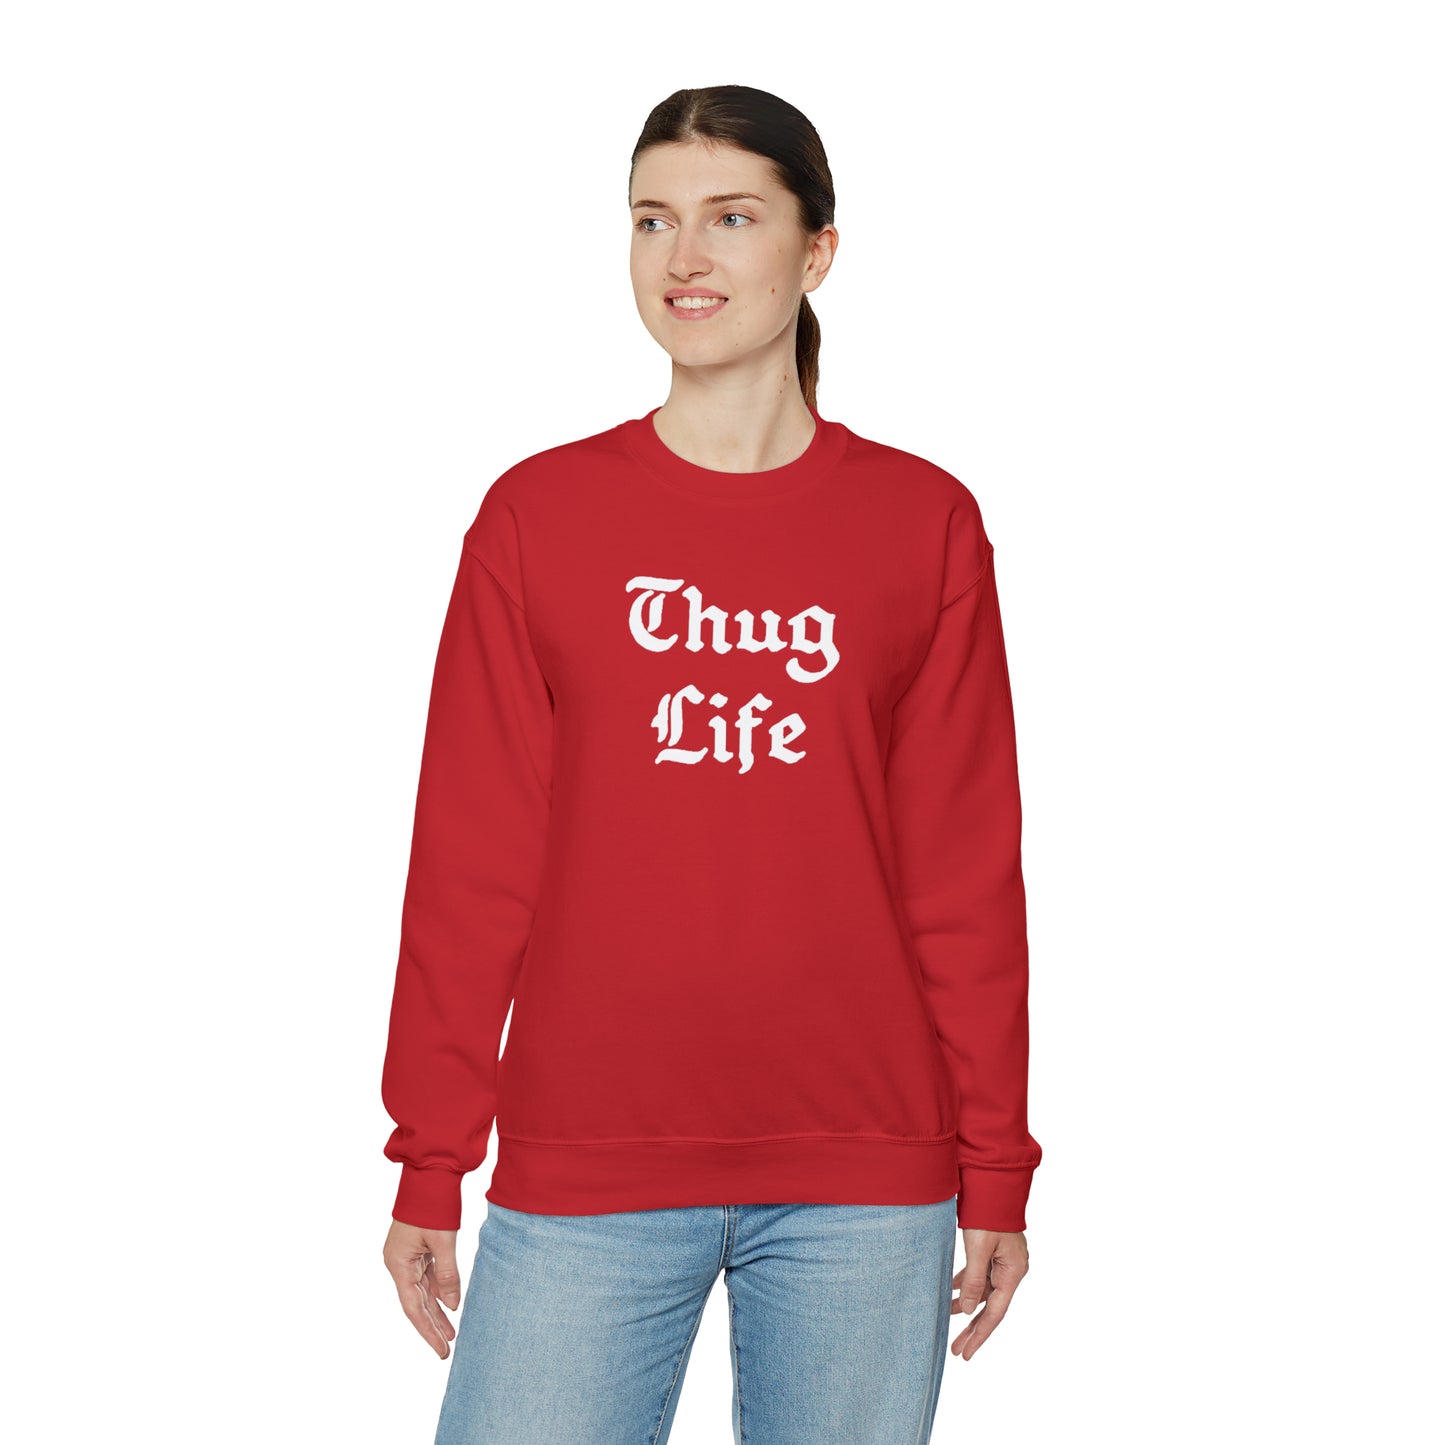 Thug Life Crewneck Sweatshirt